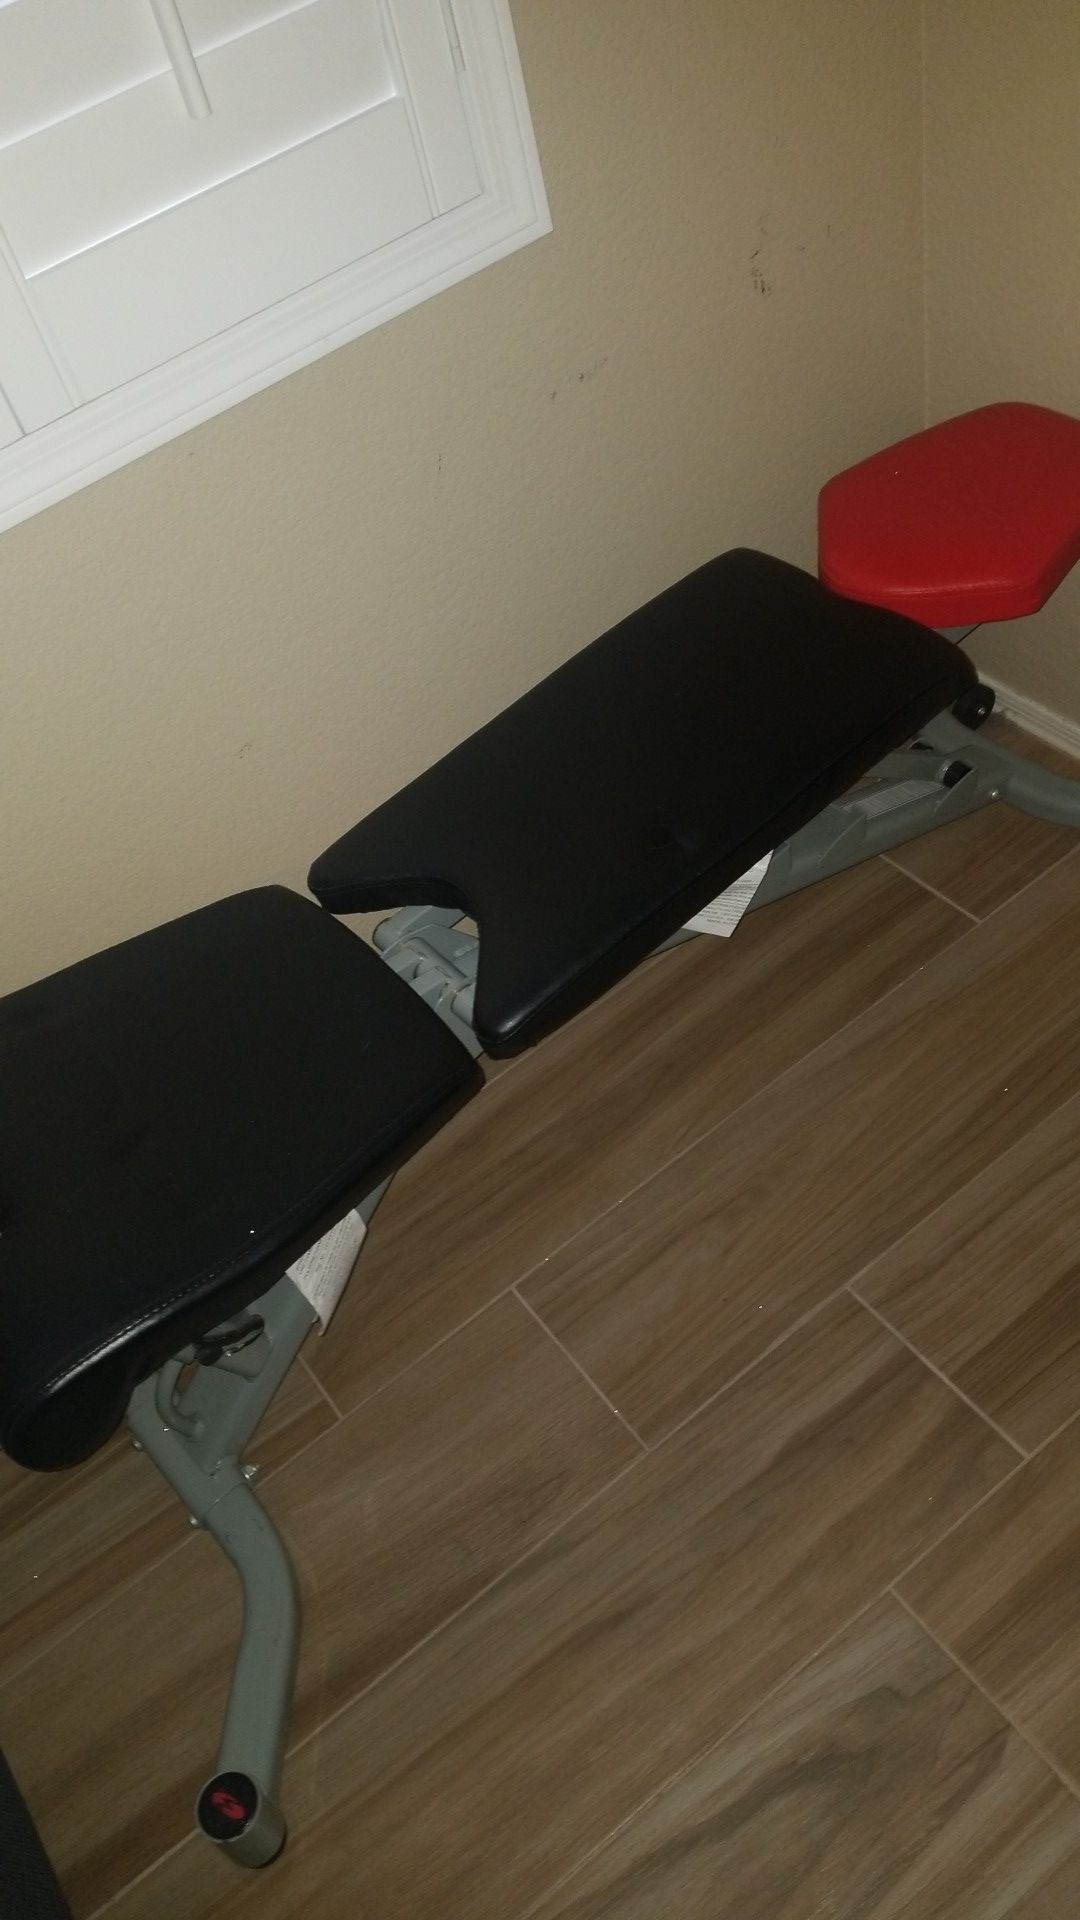 Bowflex weight bench